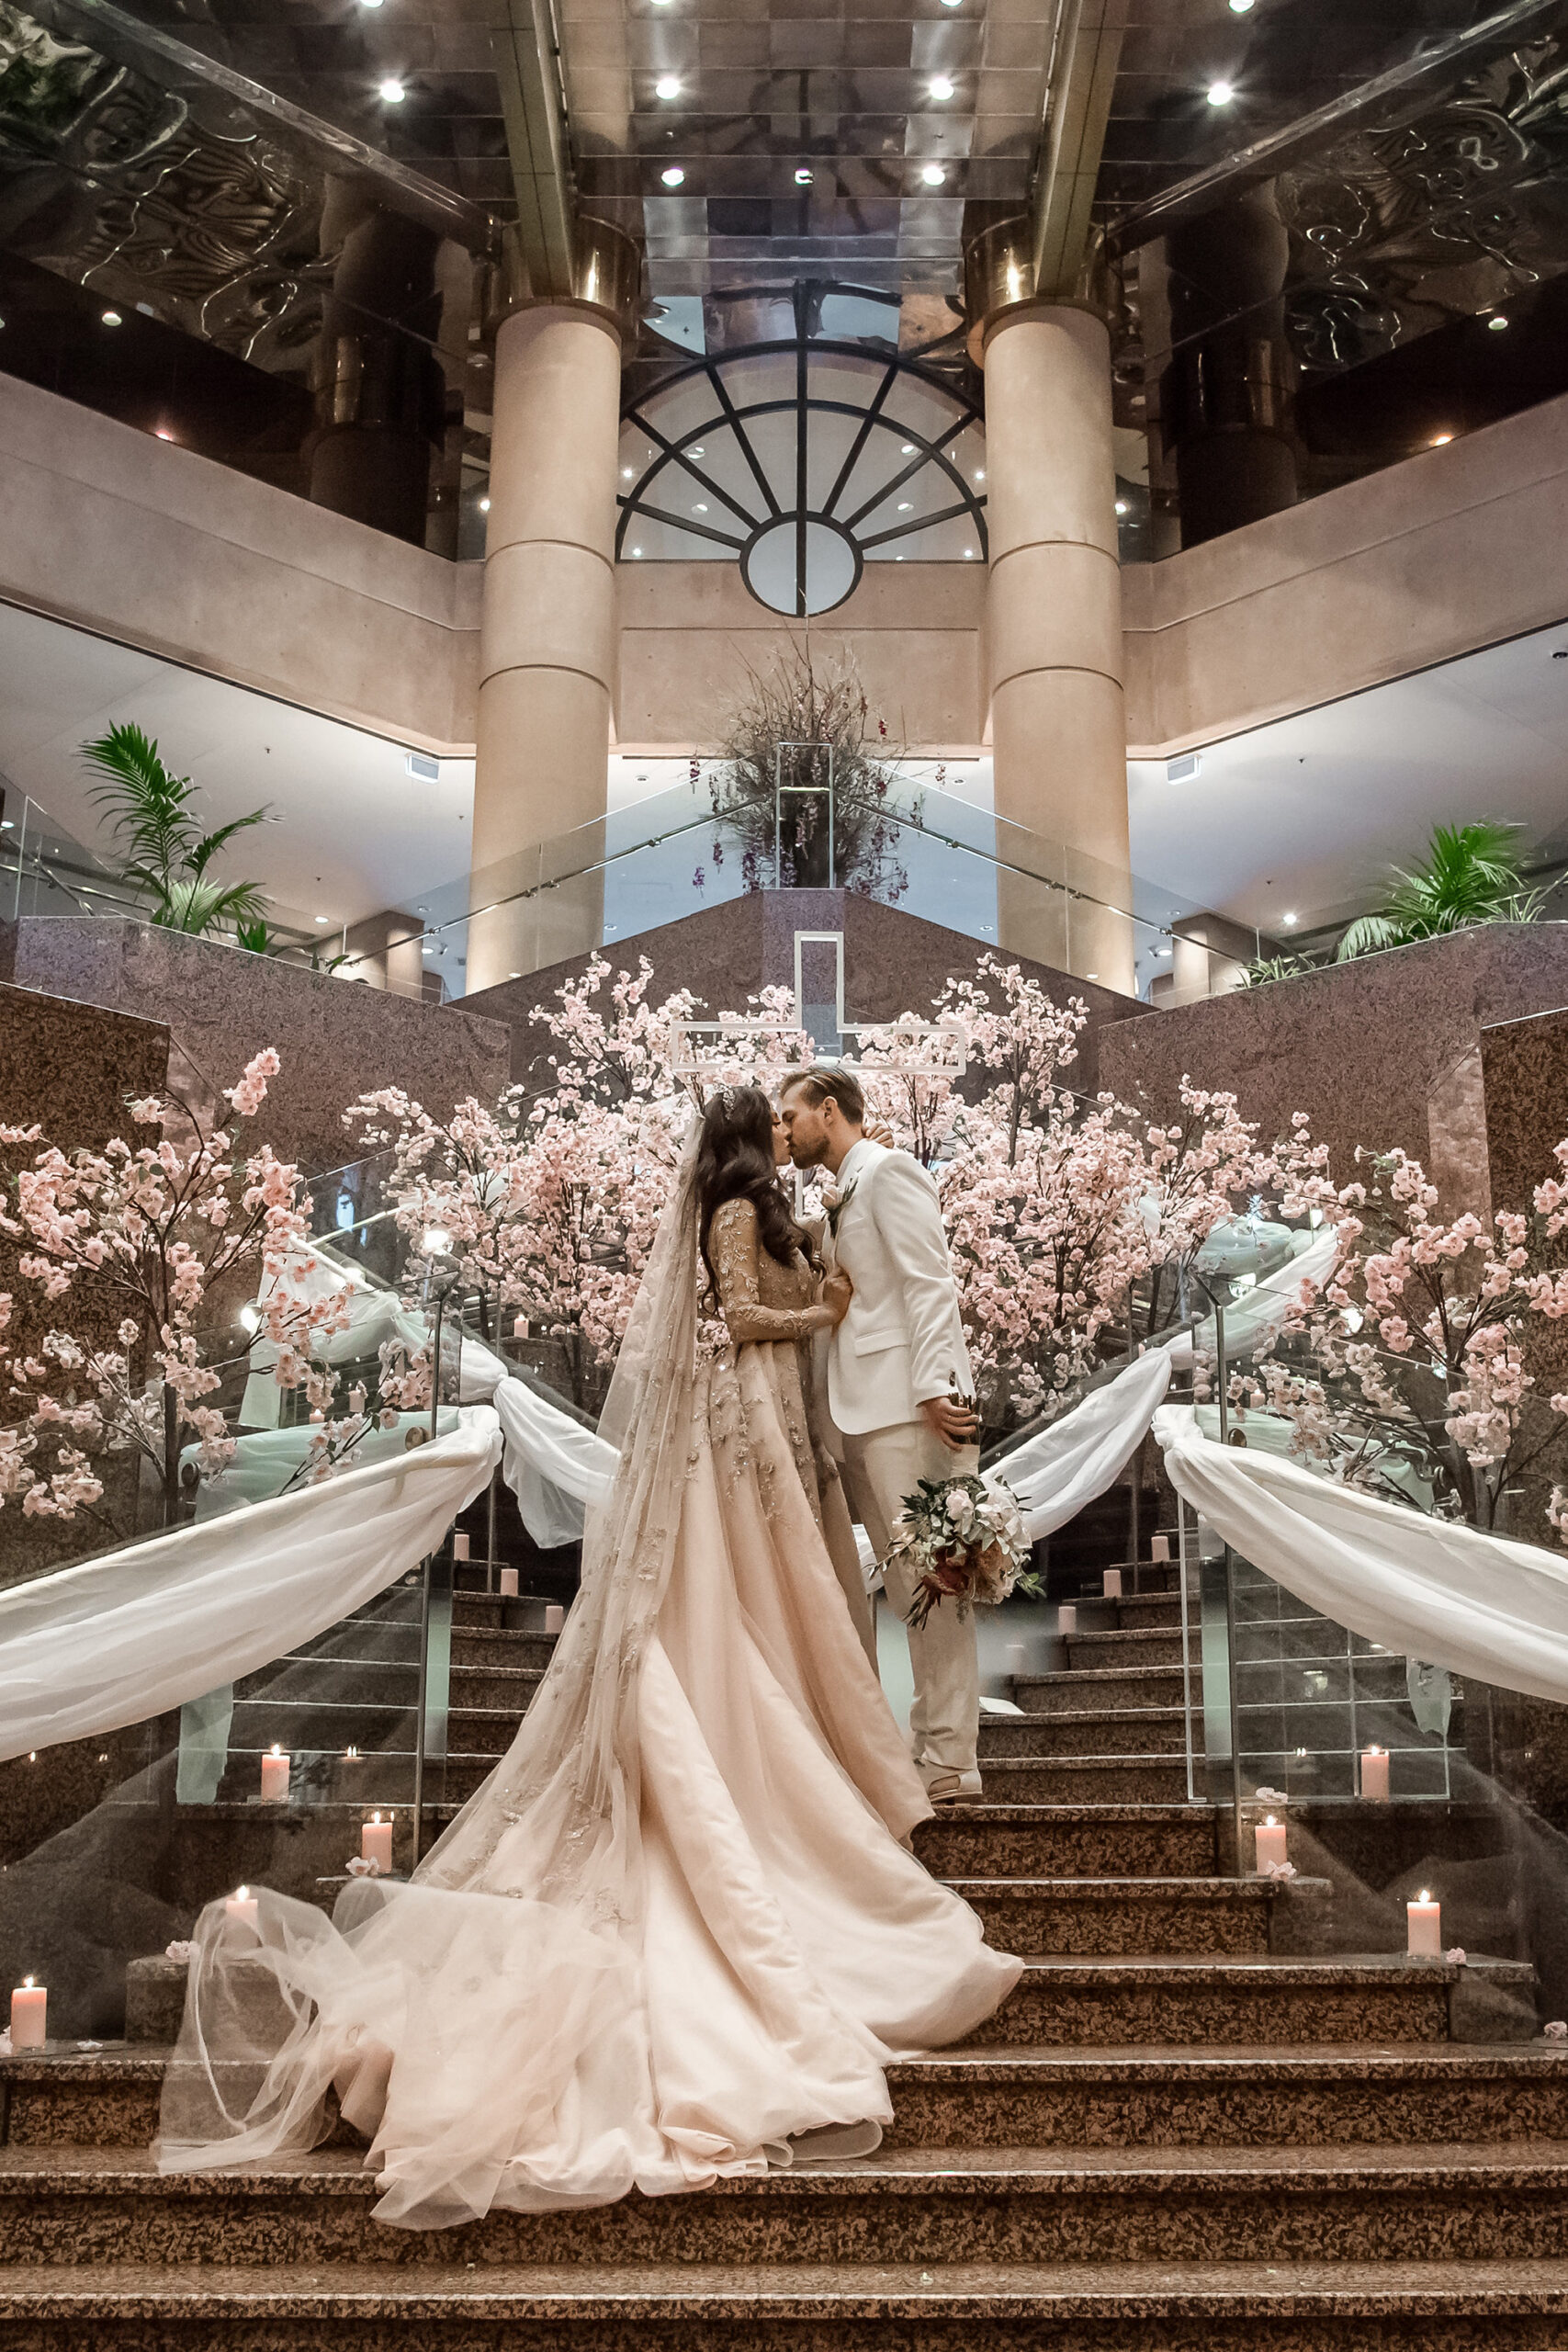 Stephanie Jackson Whimsical Fairytale Wedding B Captured by Ky Luu 022 scaled